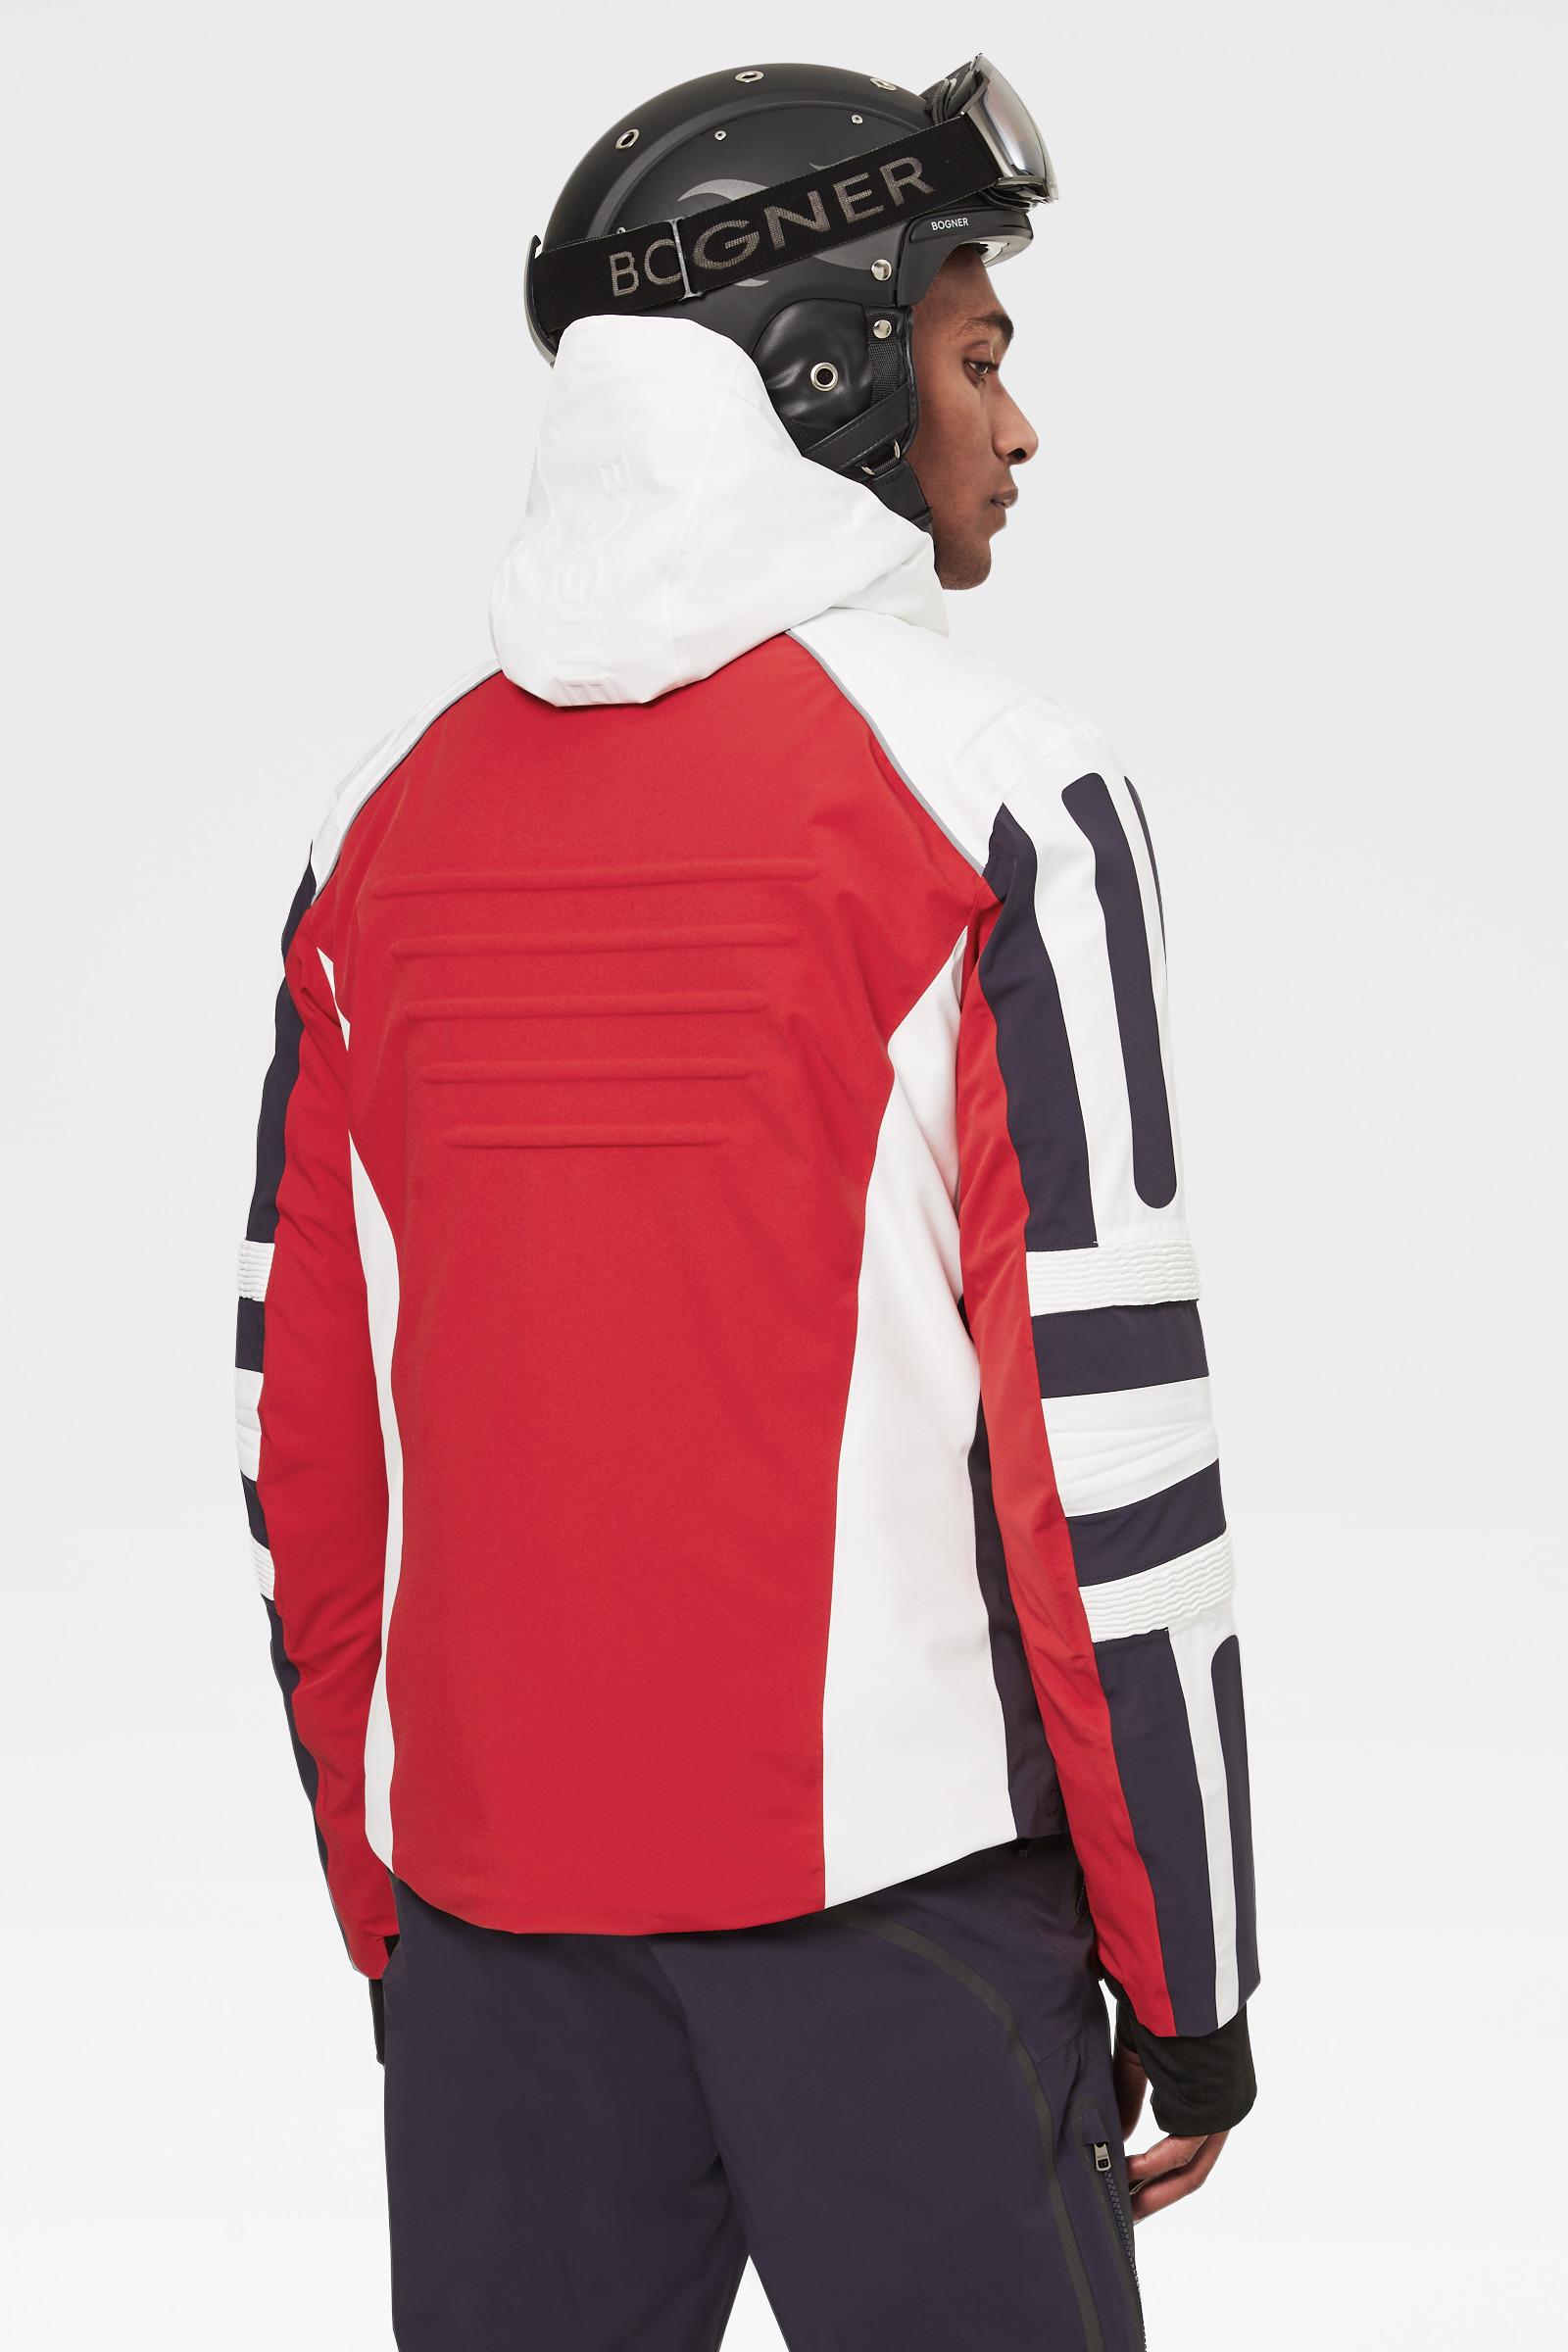 Bogner Kaleo Ski Jacket In Red/white/black for Men | Lyst Australia